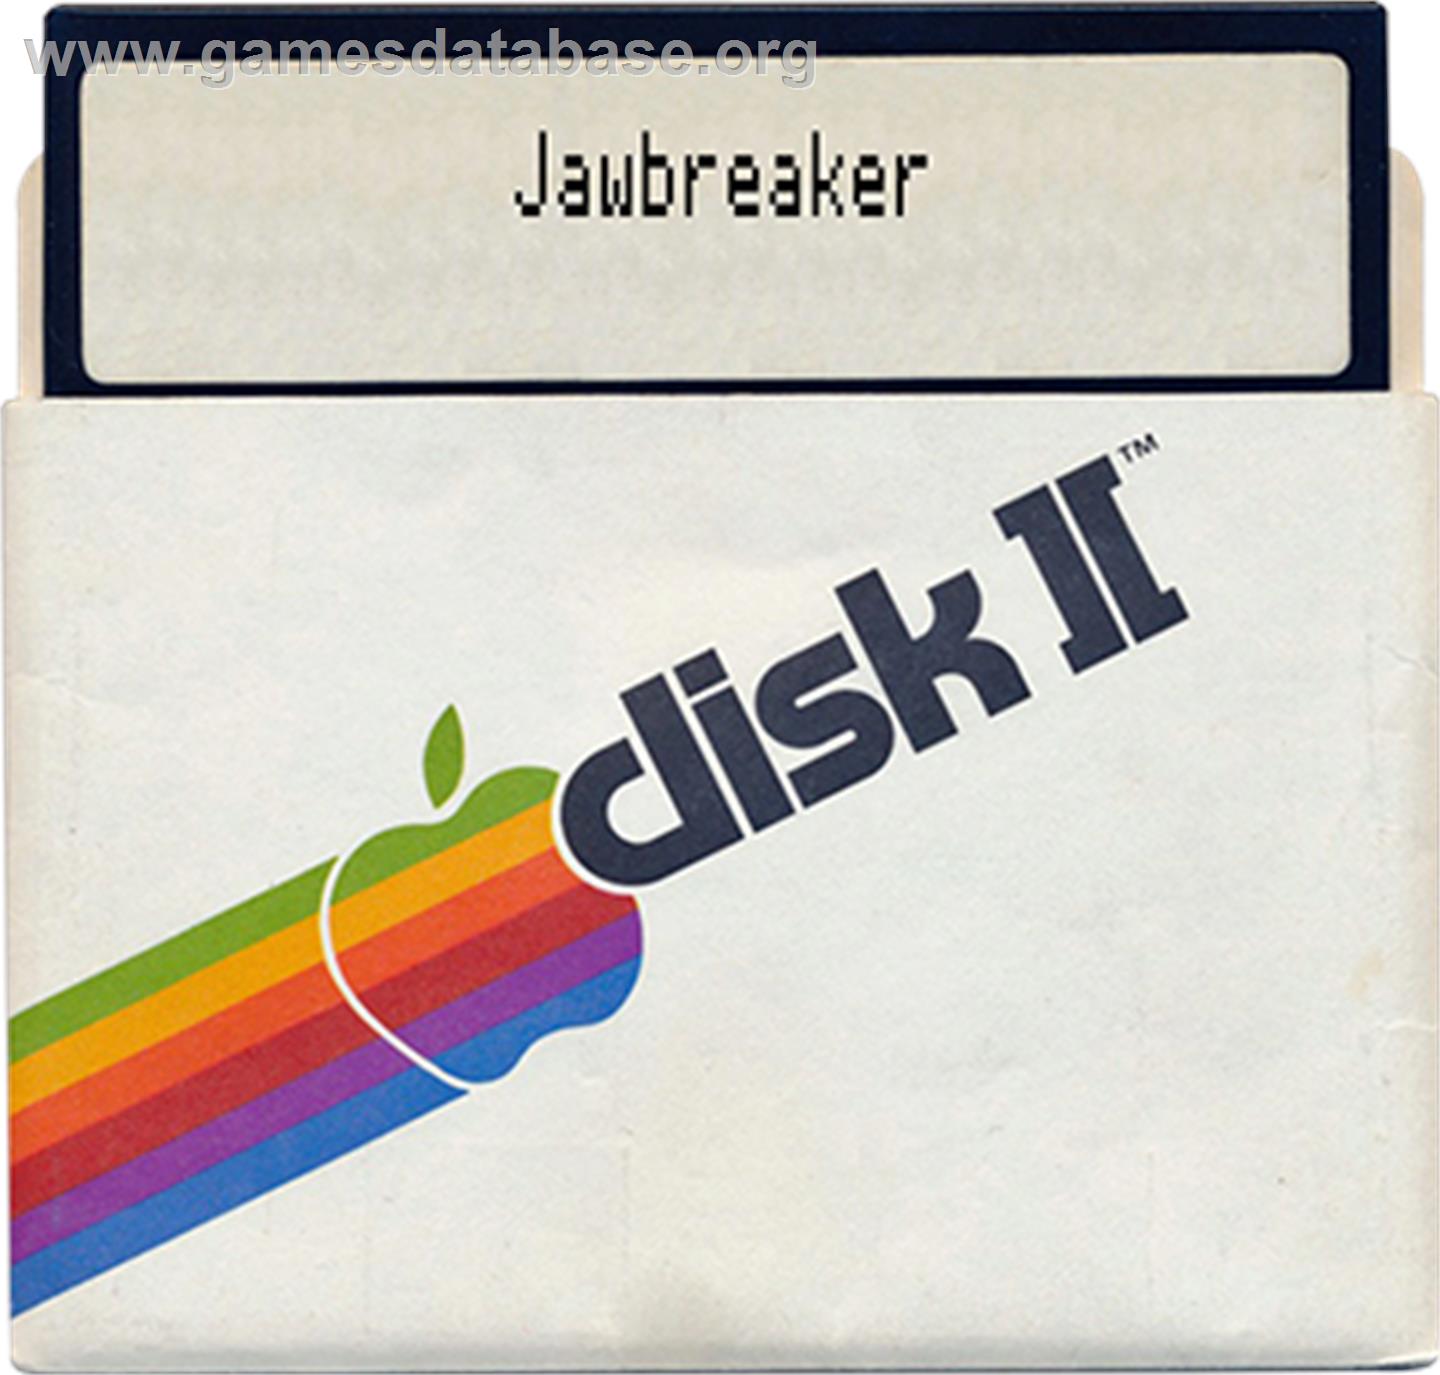 Jaw Breaker - Apple II - Artwork - Disc